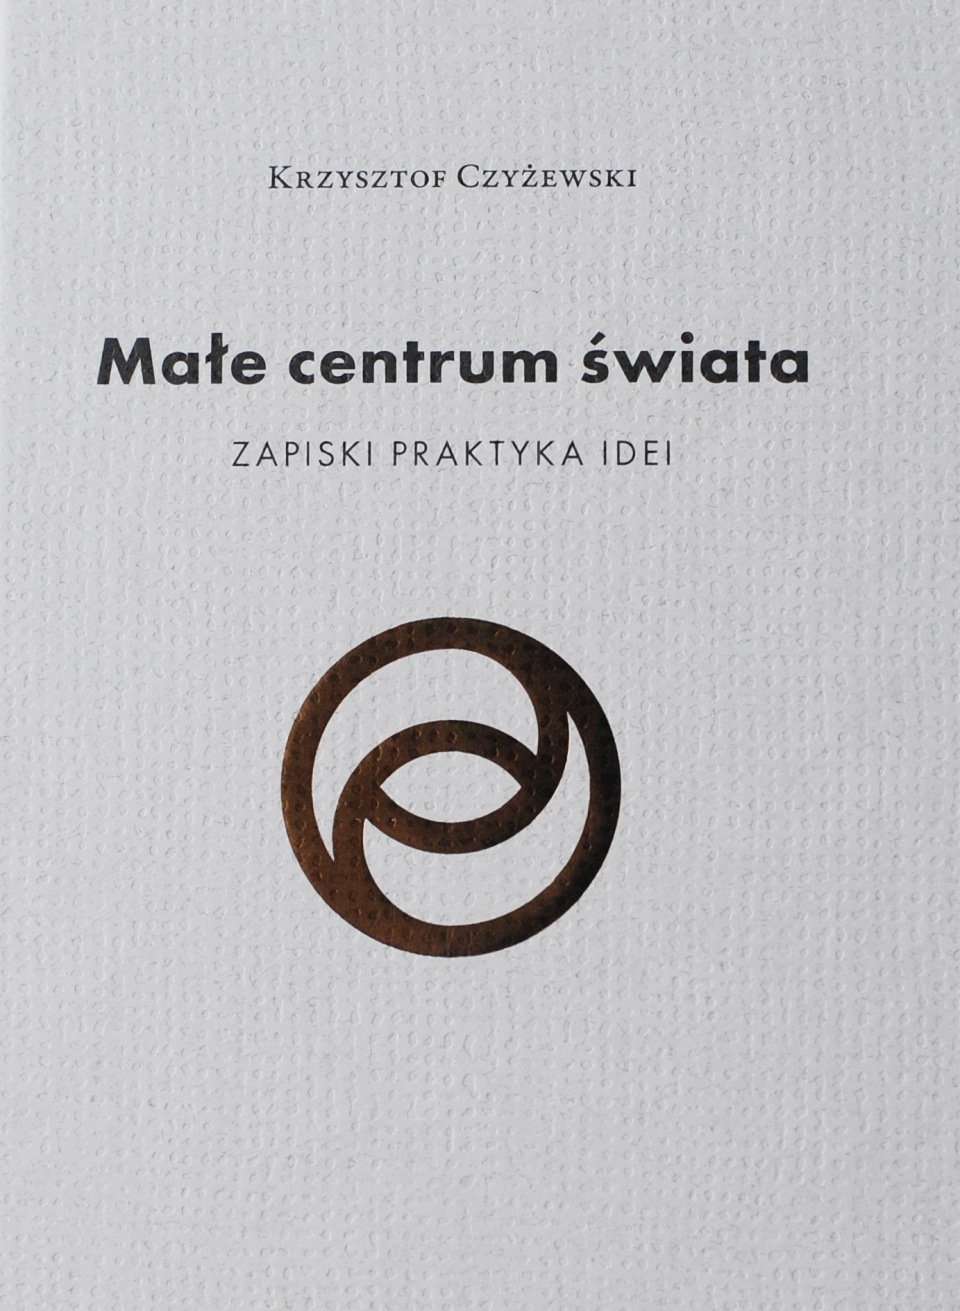 Okładka książki "Małe centrum świata. Zapiski praktyka idei". Materiały pras.